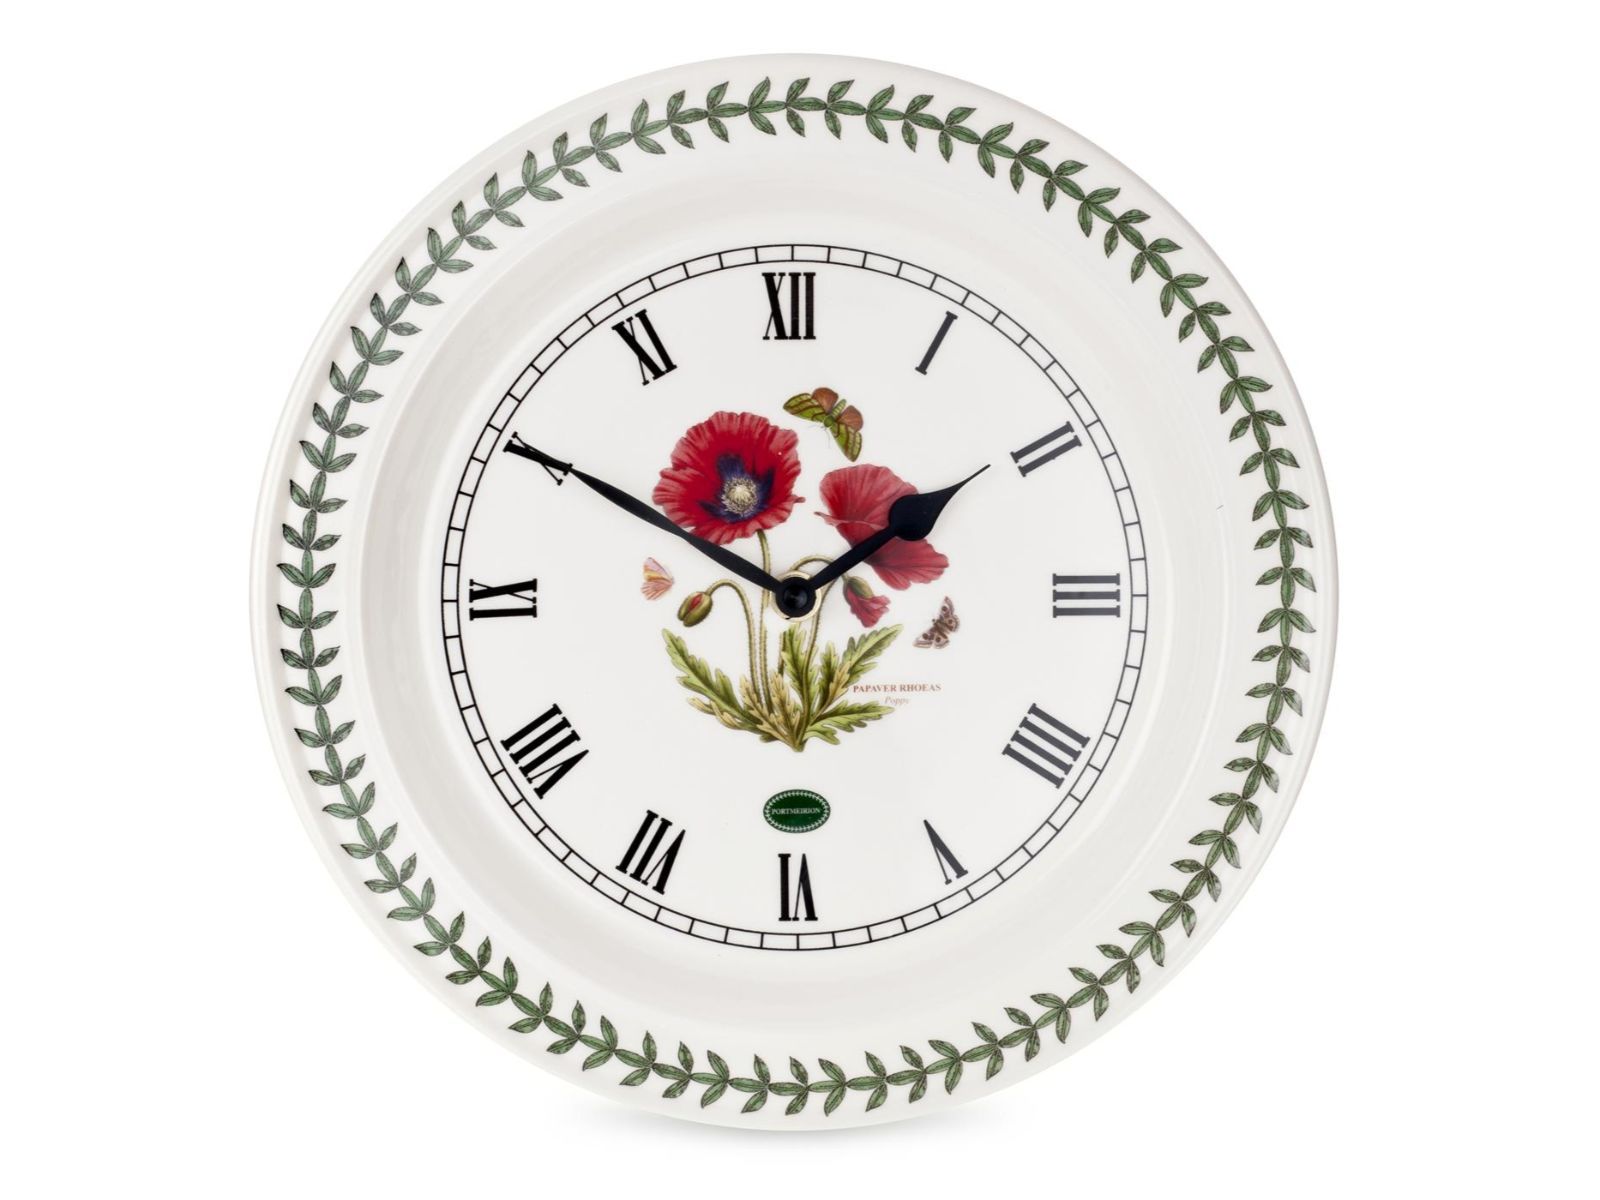 Buy the Portmeirion Botanic Garden Poppy Wall Clock here